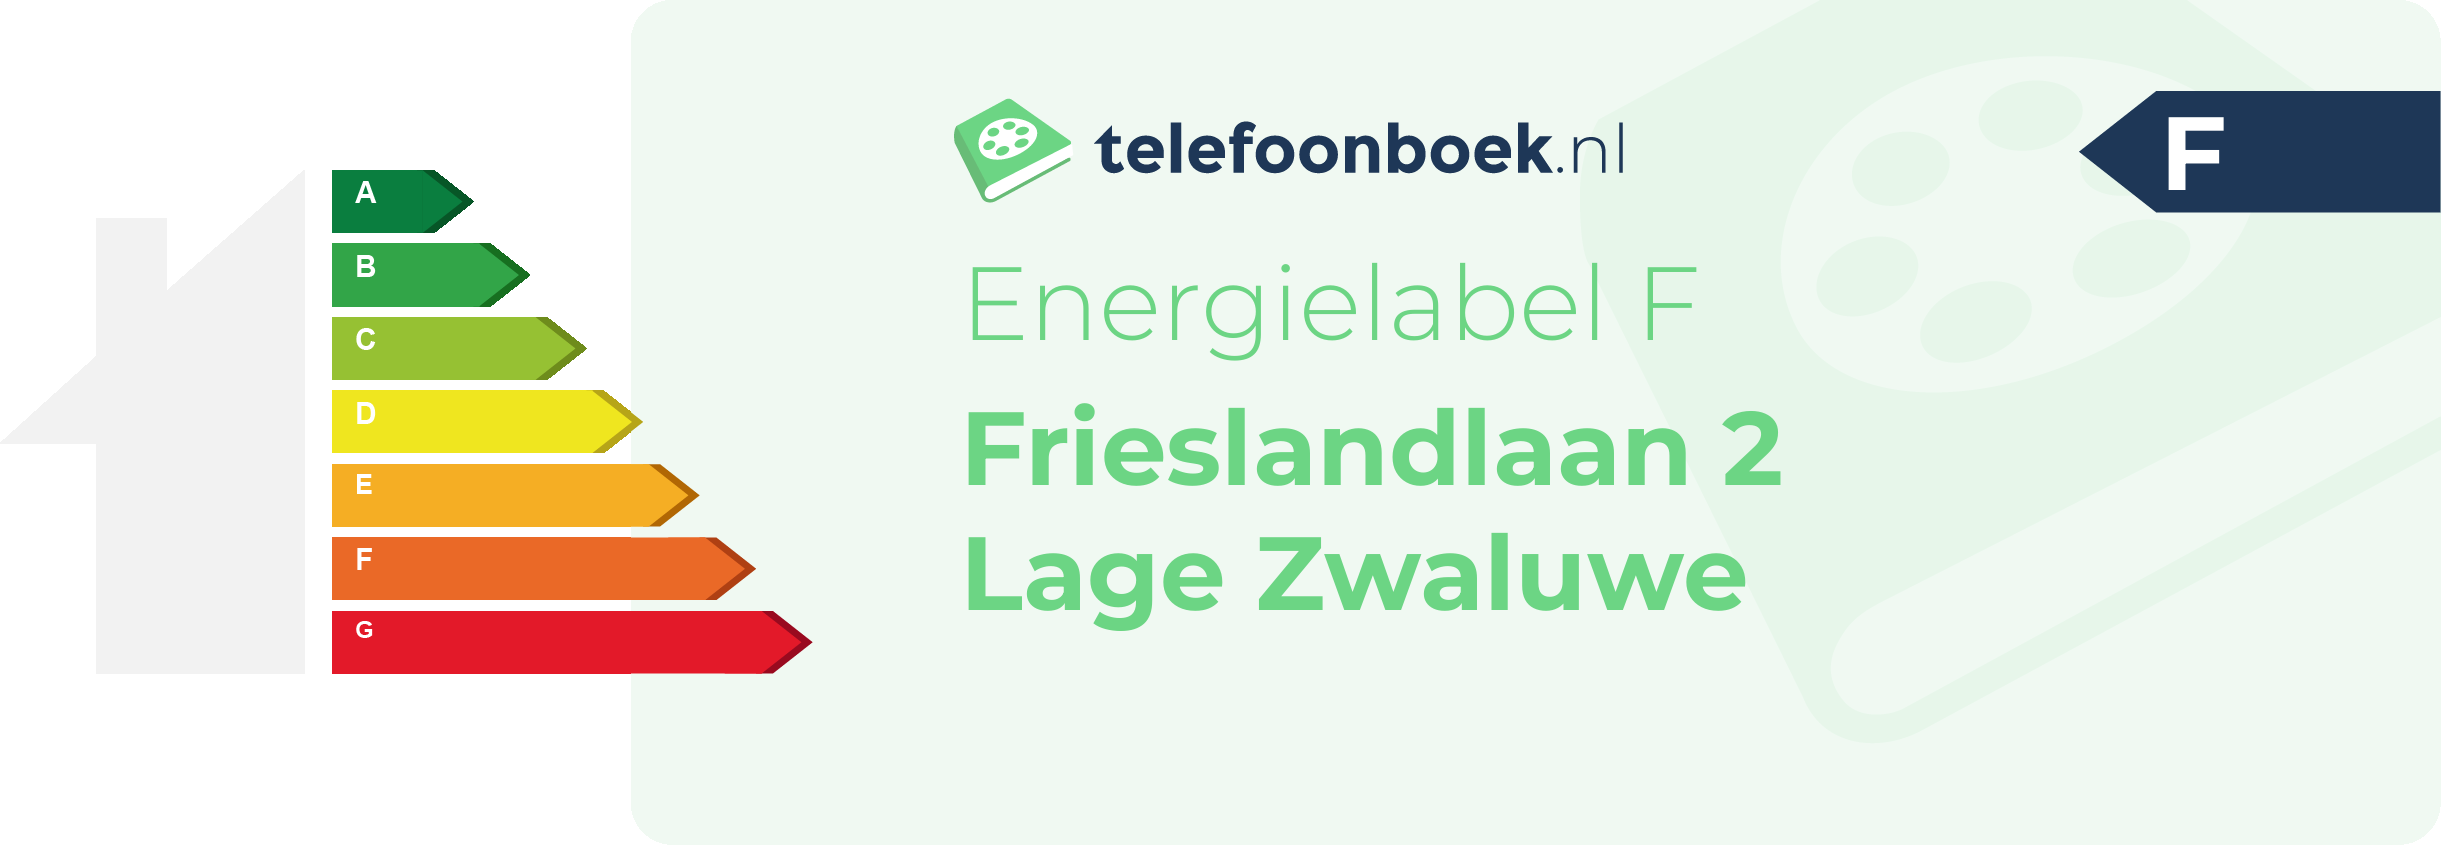 Energielabel Frieslandlaan 2 Lage Zwaluwe